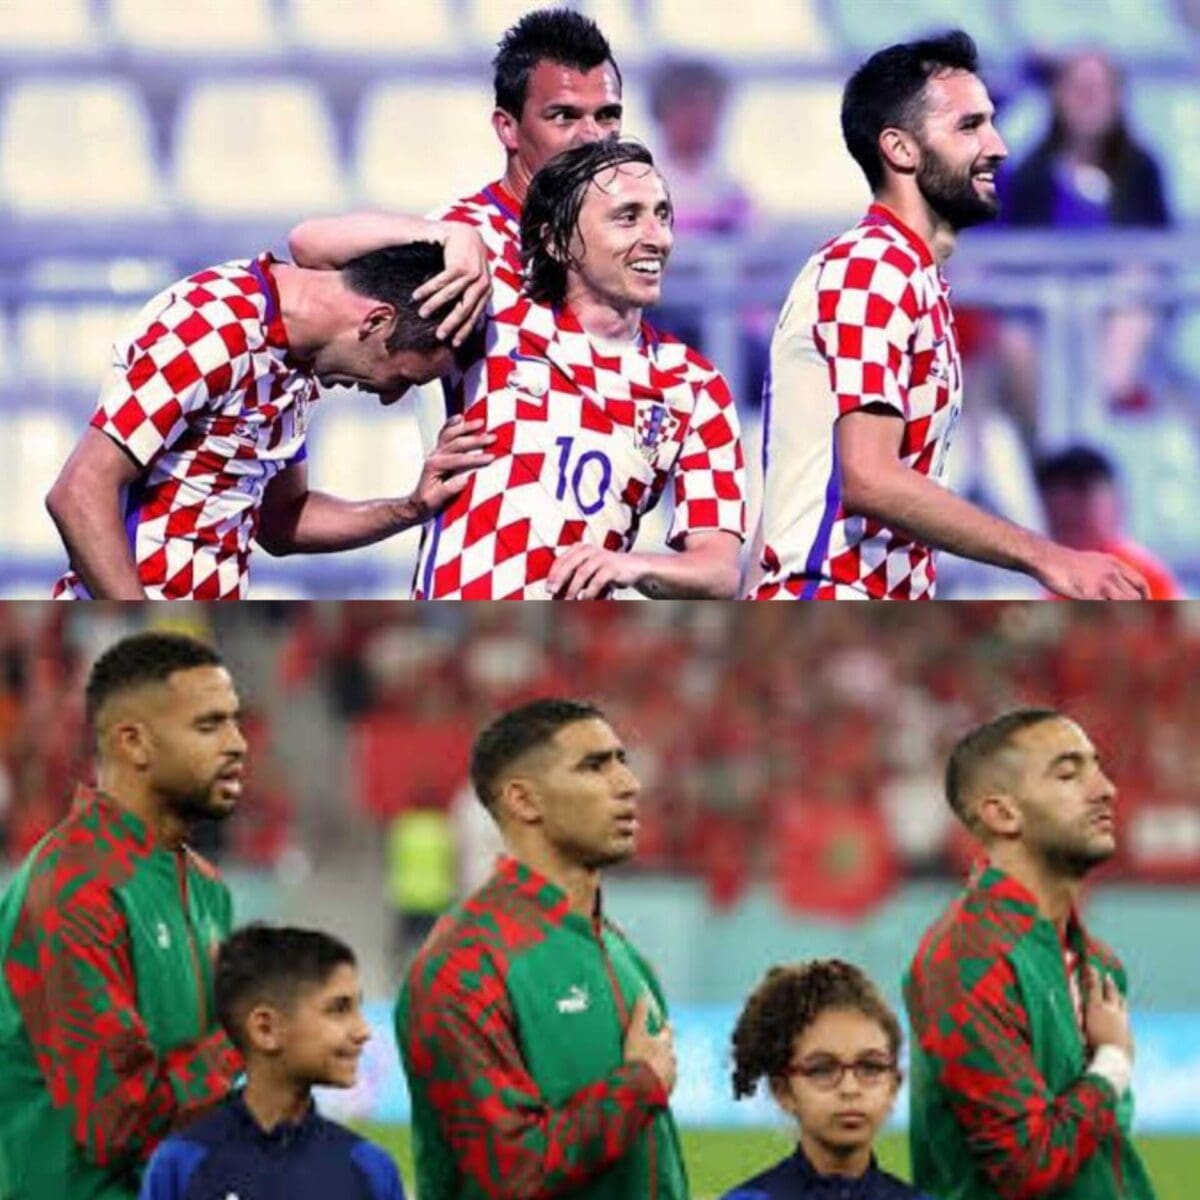 موعد مباراة المغرب وكرواتيا